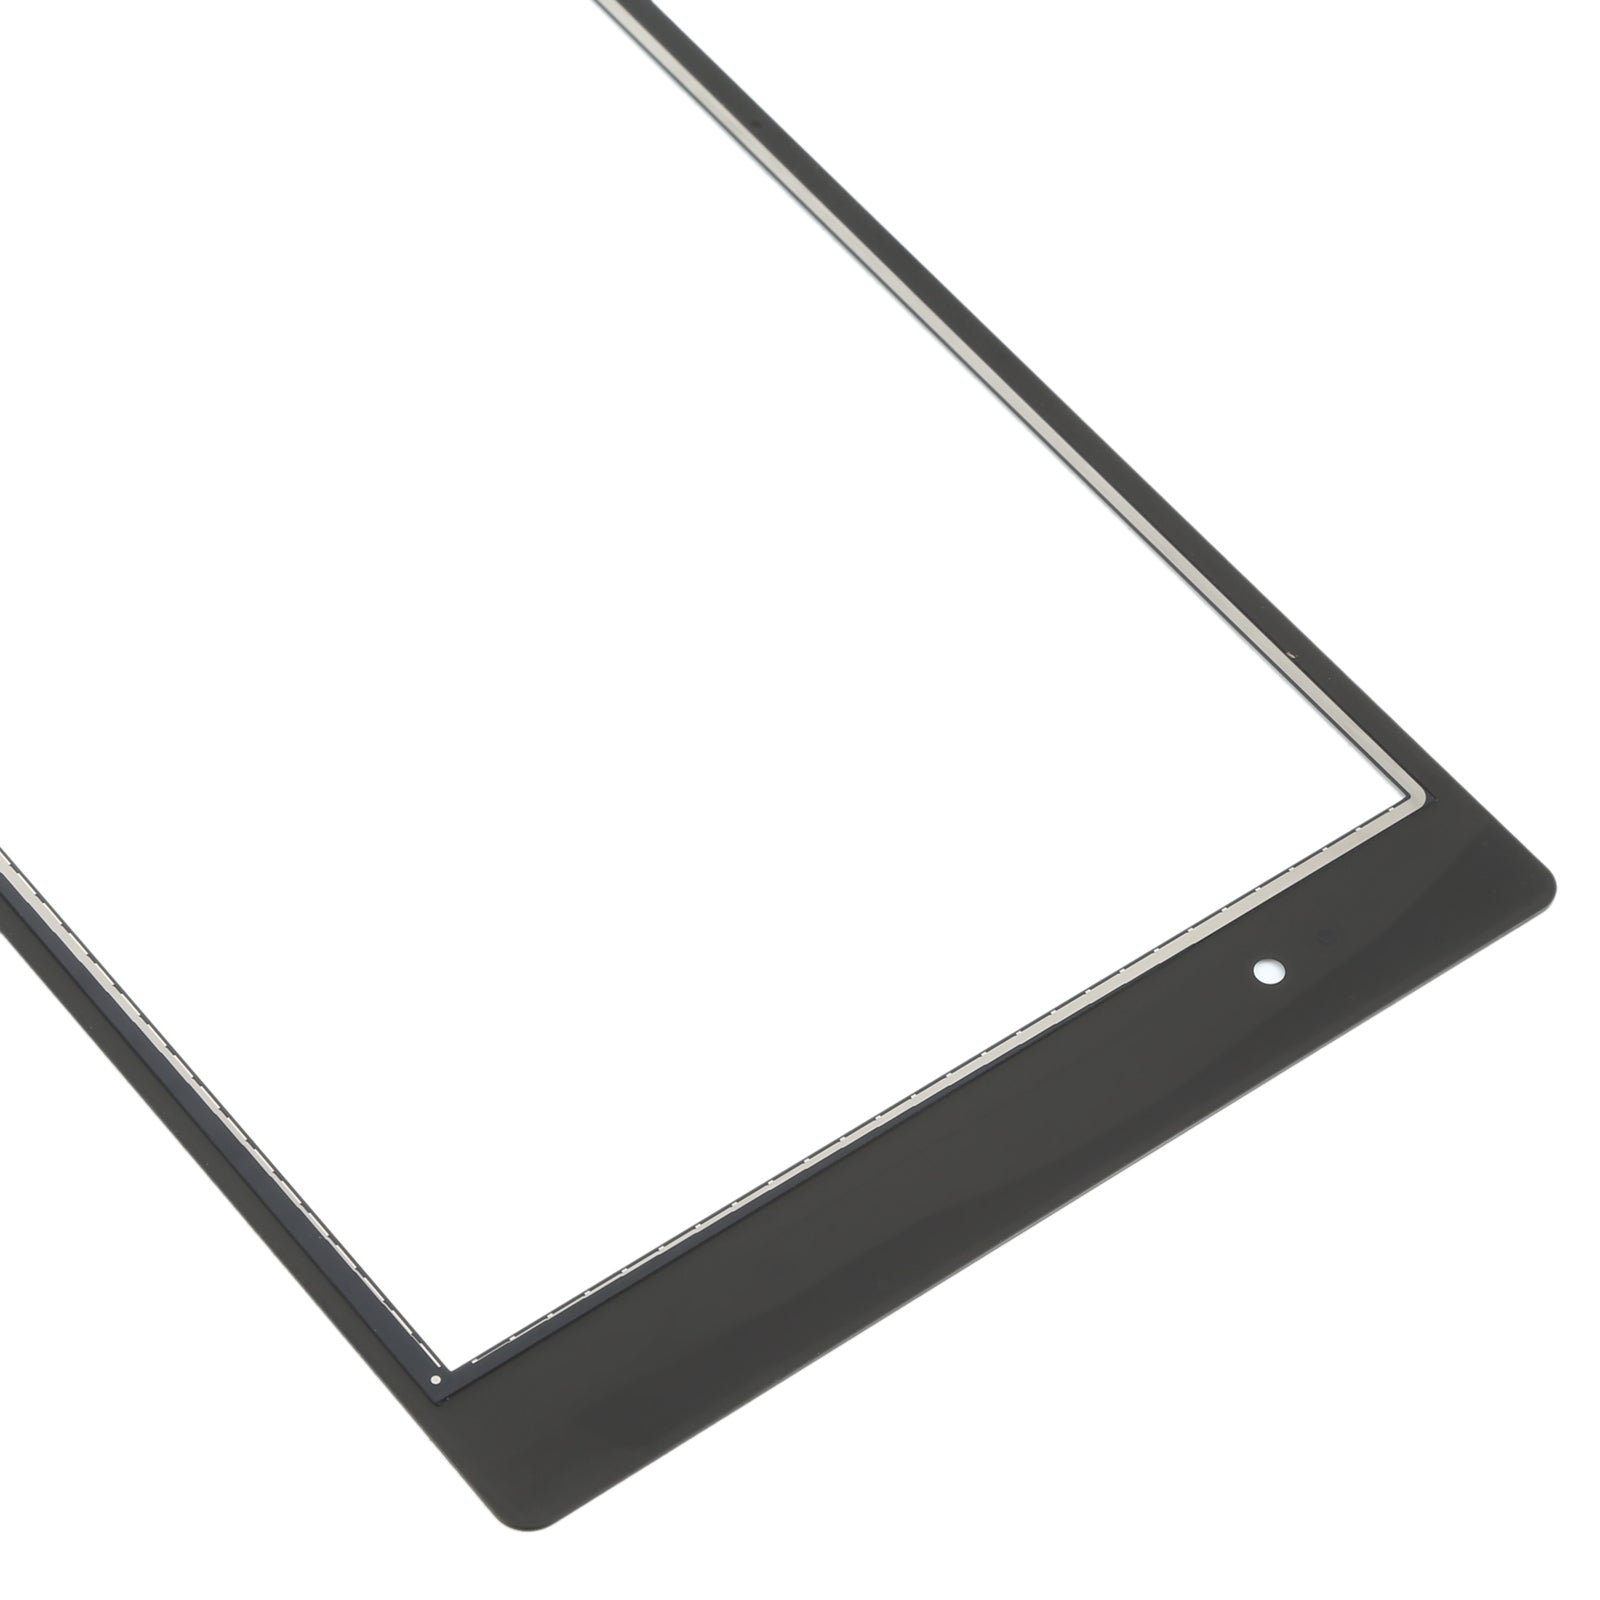 Pantalla Tactil Digitalizador Sony Xperia Z3 Tablet Compact Negro